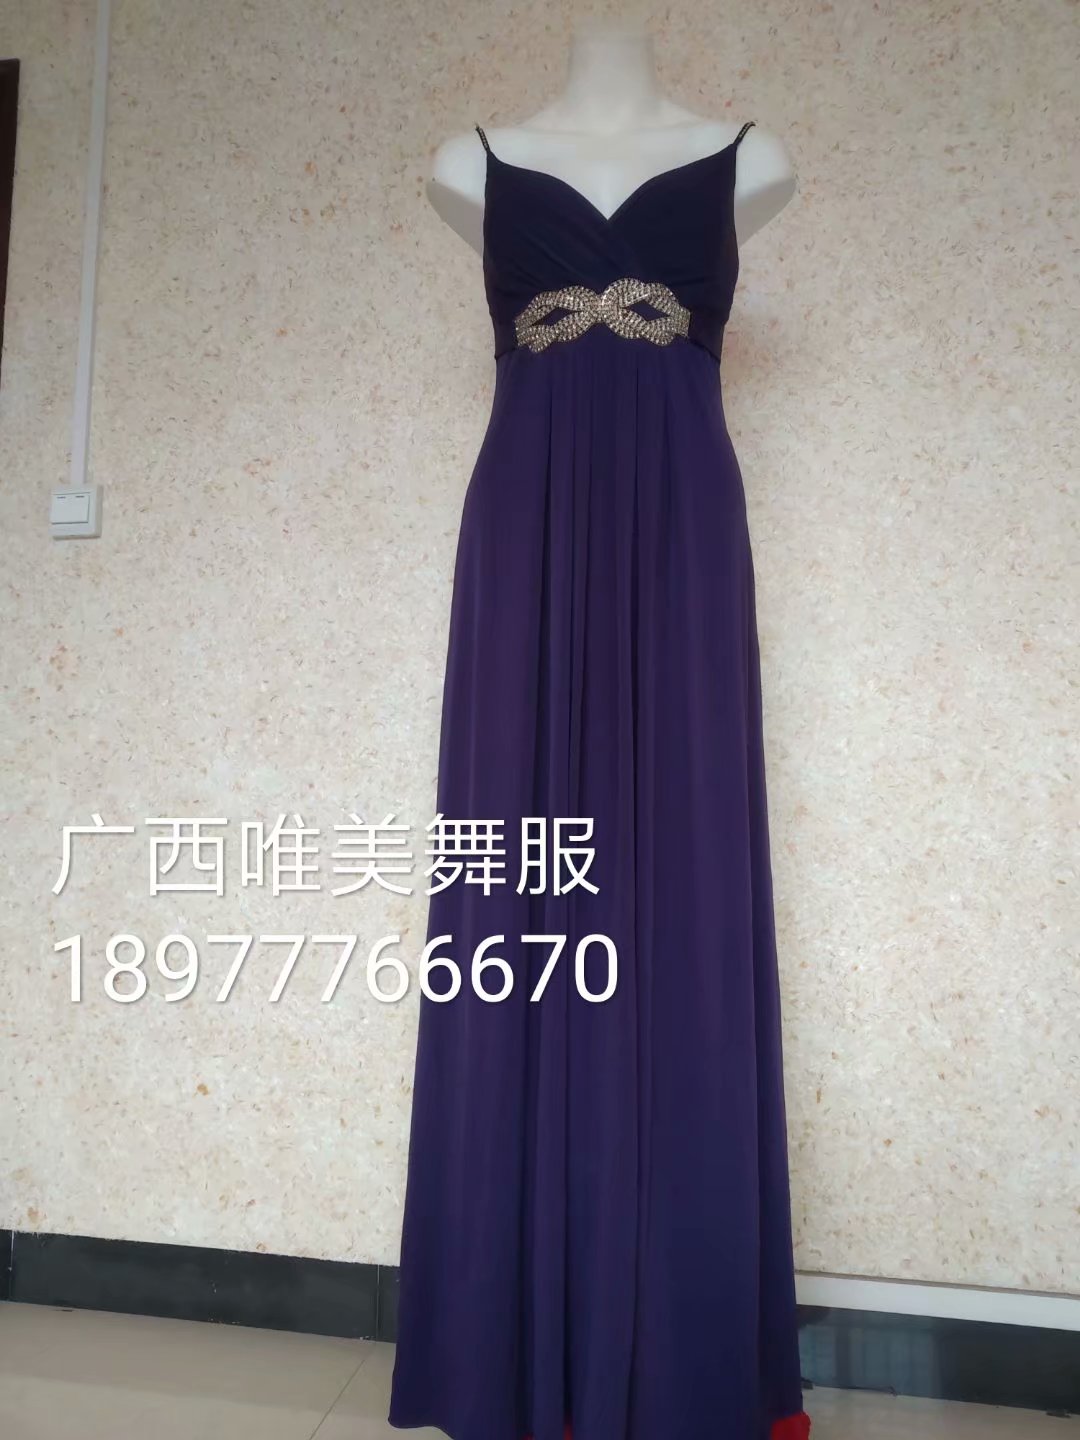 紫色大气礼服40元